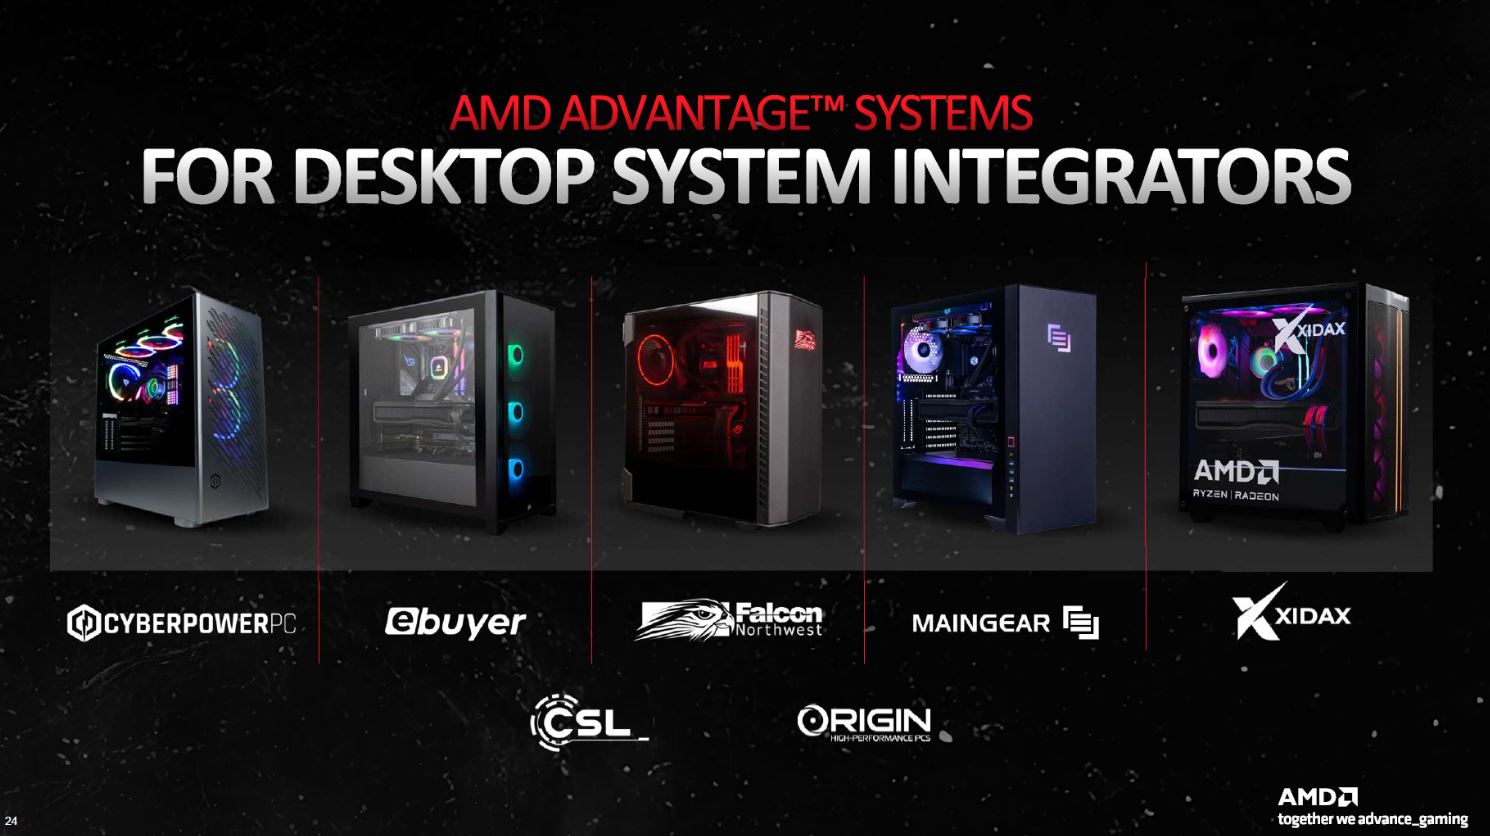 Diapositiva de la ventaja de AMD.